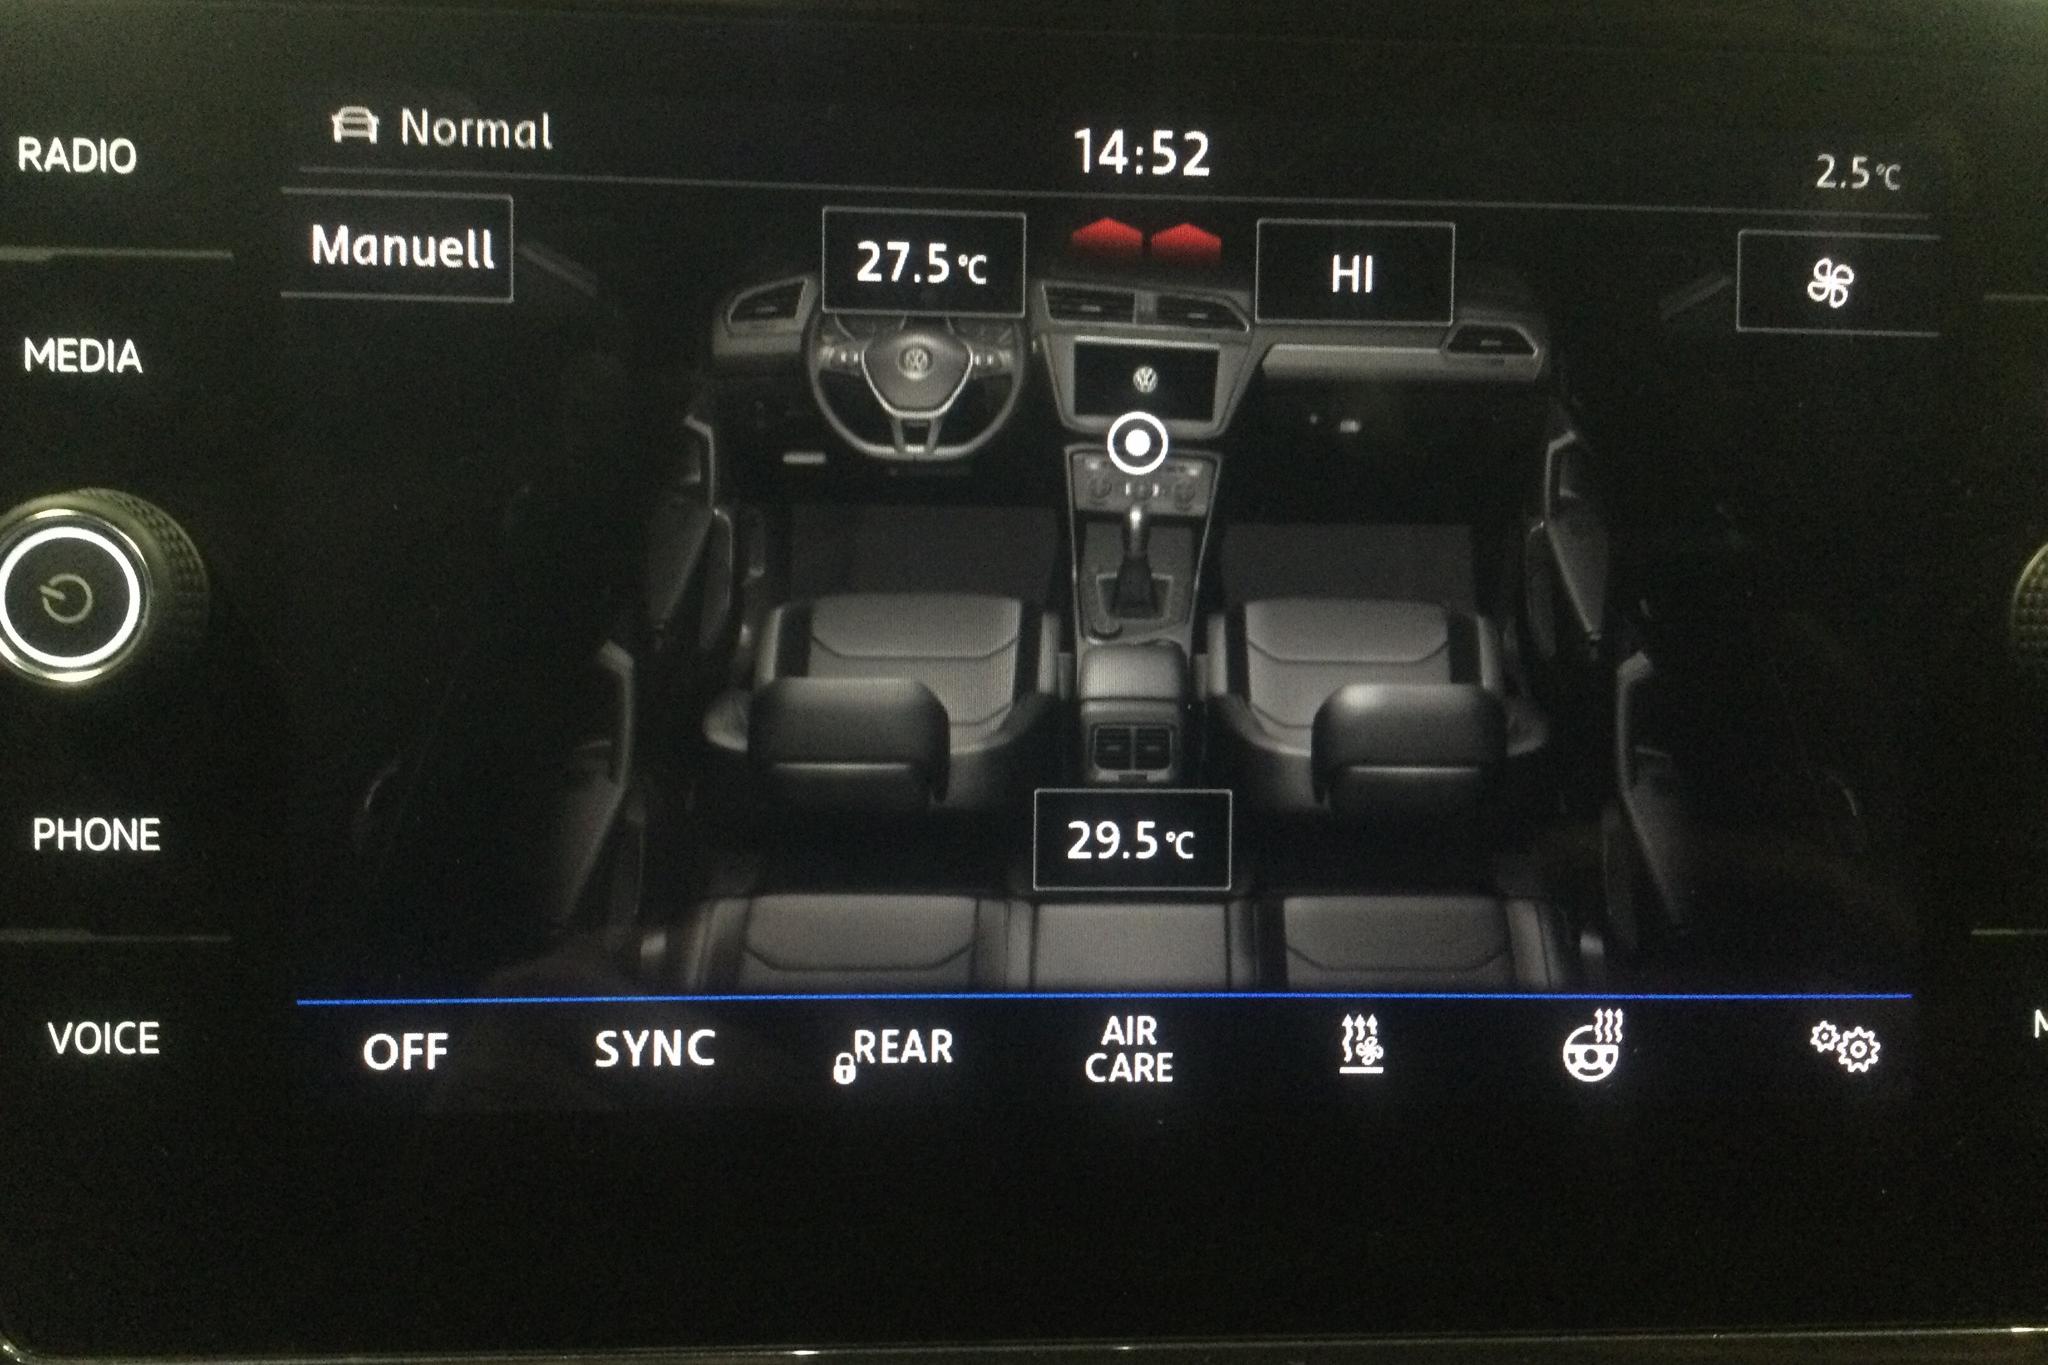 VW Tiguan 2.0 TDI 4MOTION (190hk) - 127 390 km - Automatic - white - 2018